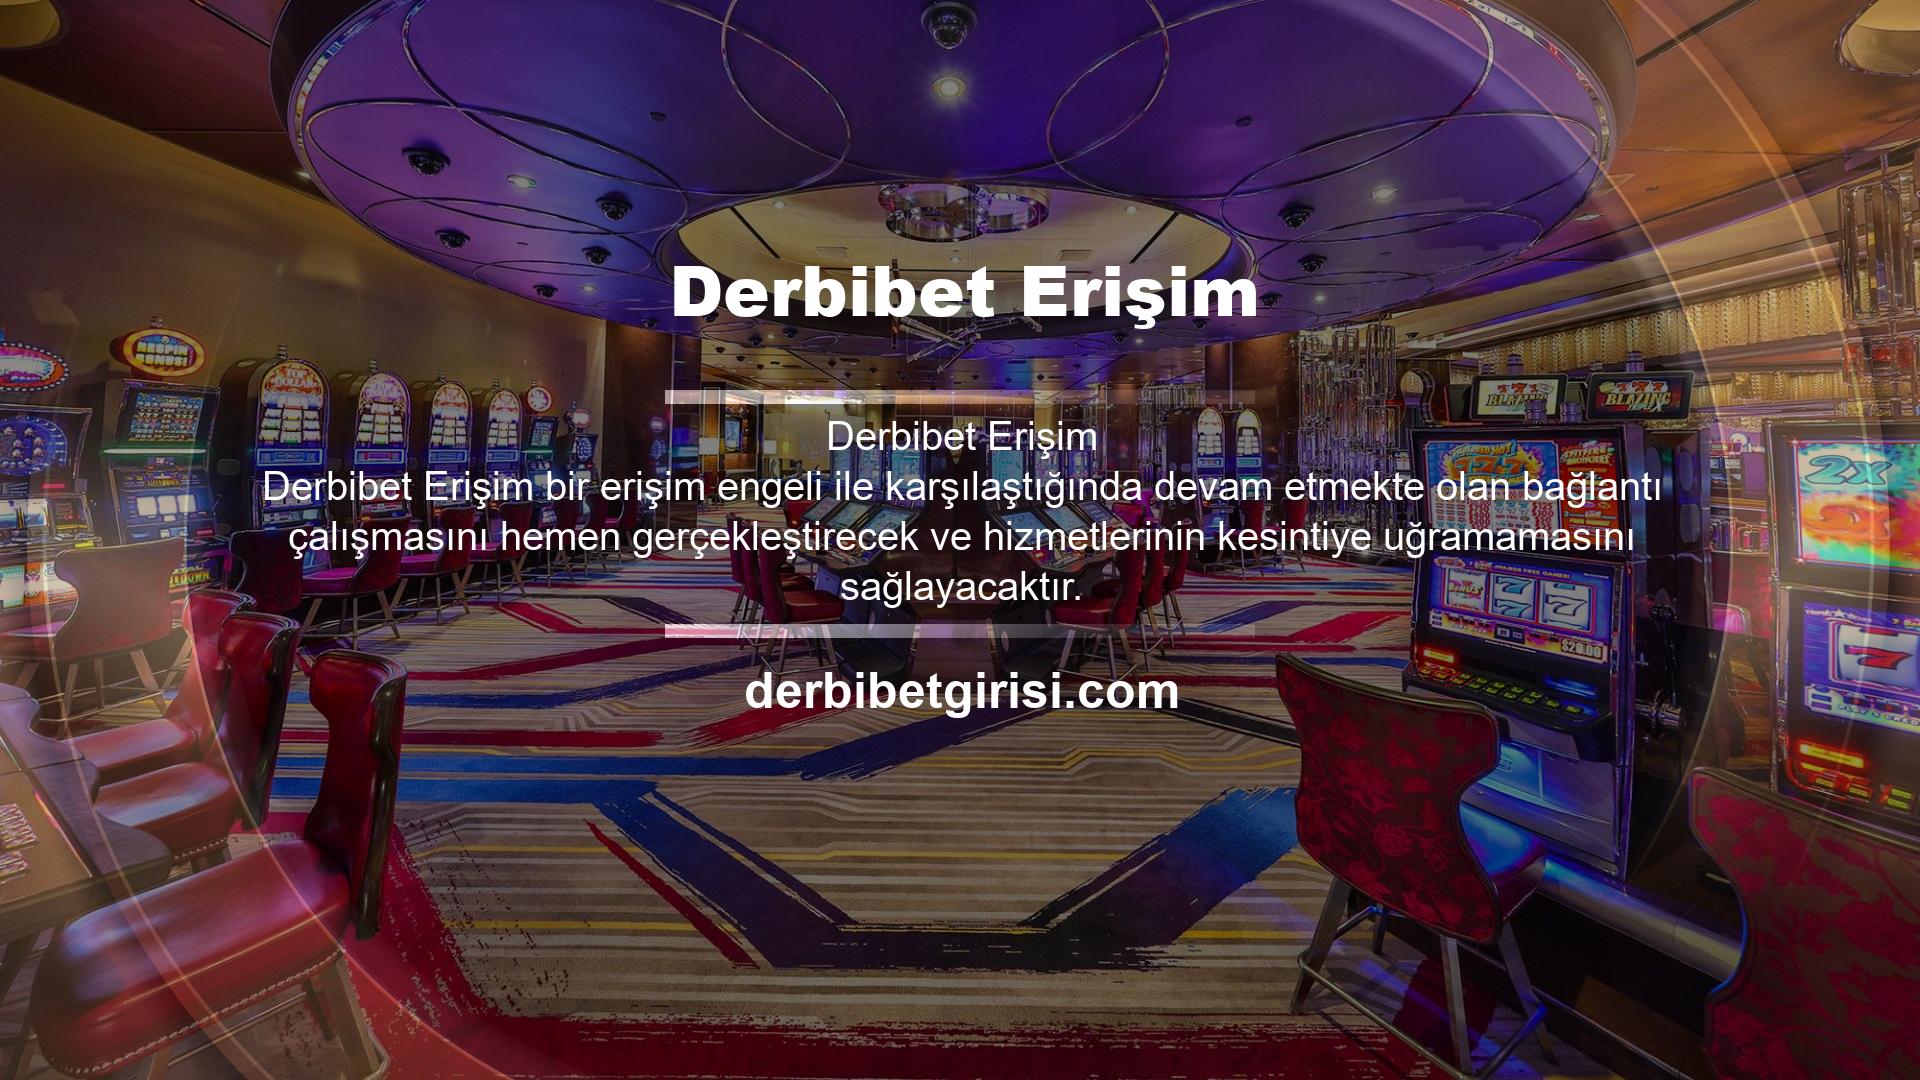 Kullanıcıları tarafından kullanılan mevcut giriş, Türk kullanıcıların spor bahisleri yapmak için erişebilecekleri Derbibet